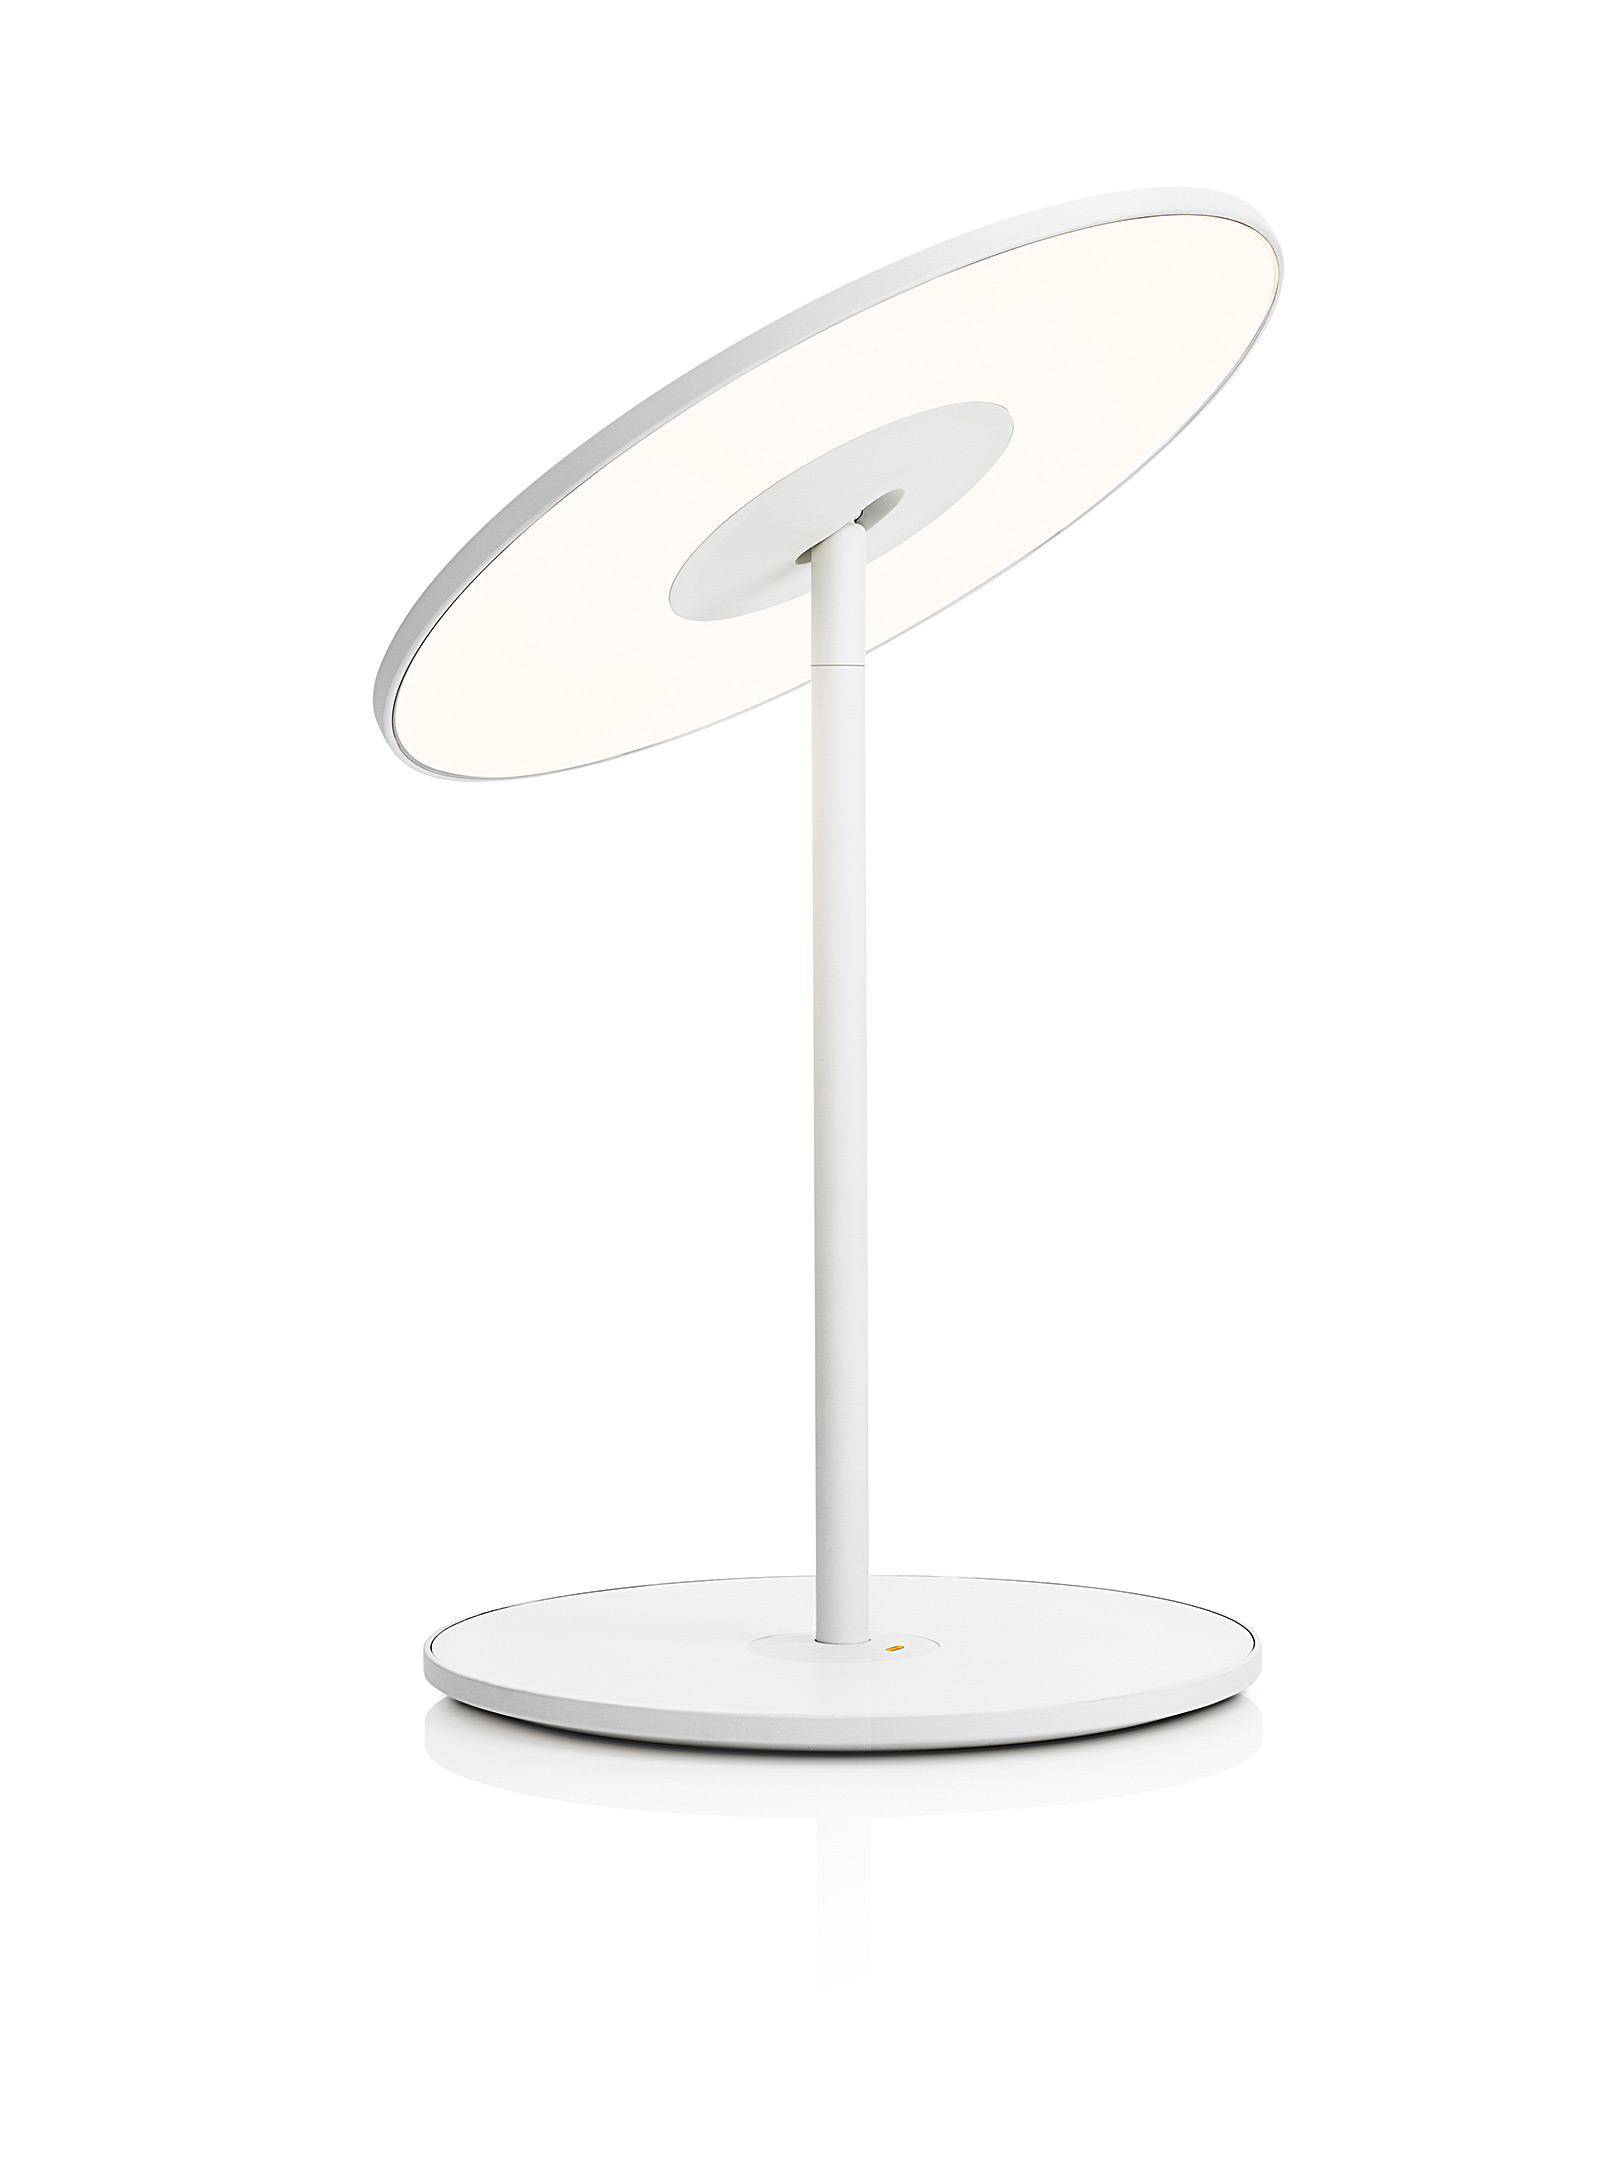 Pablo Designs Circa Table Lamp In White